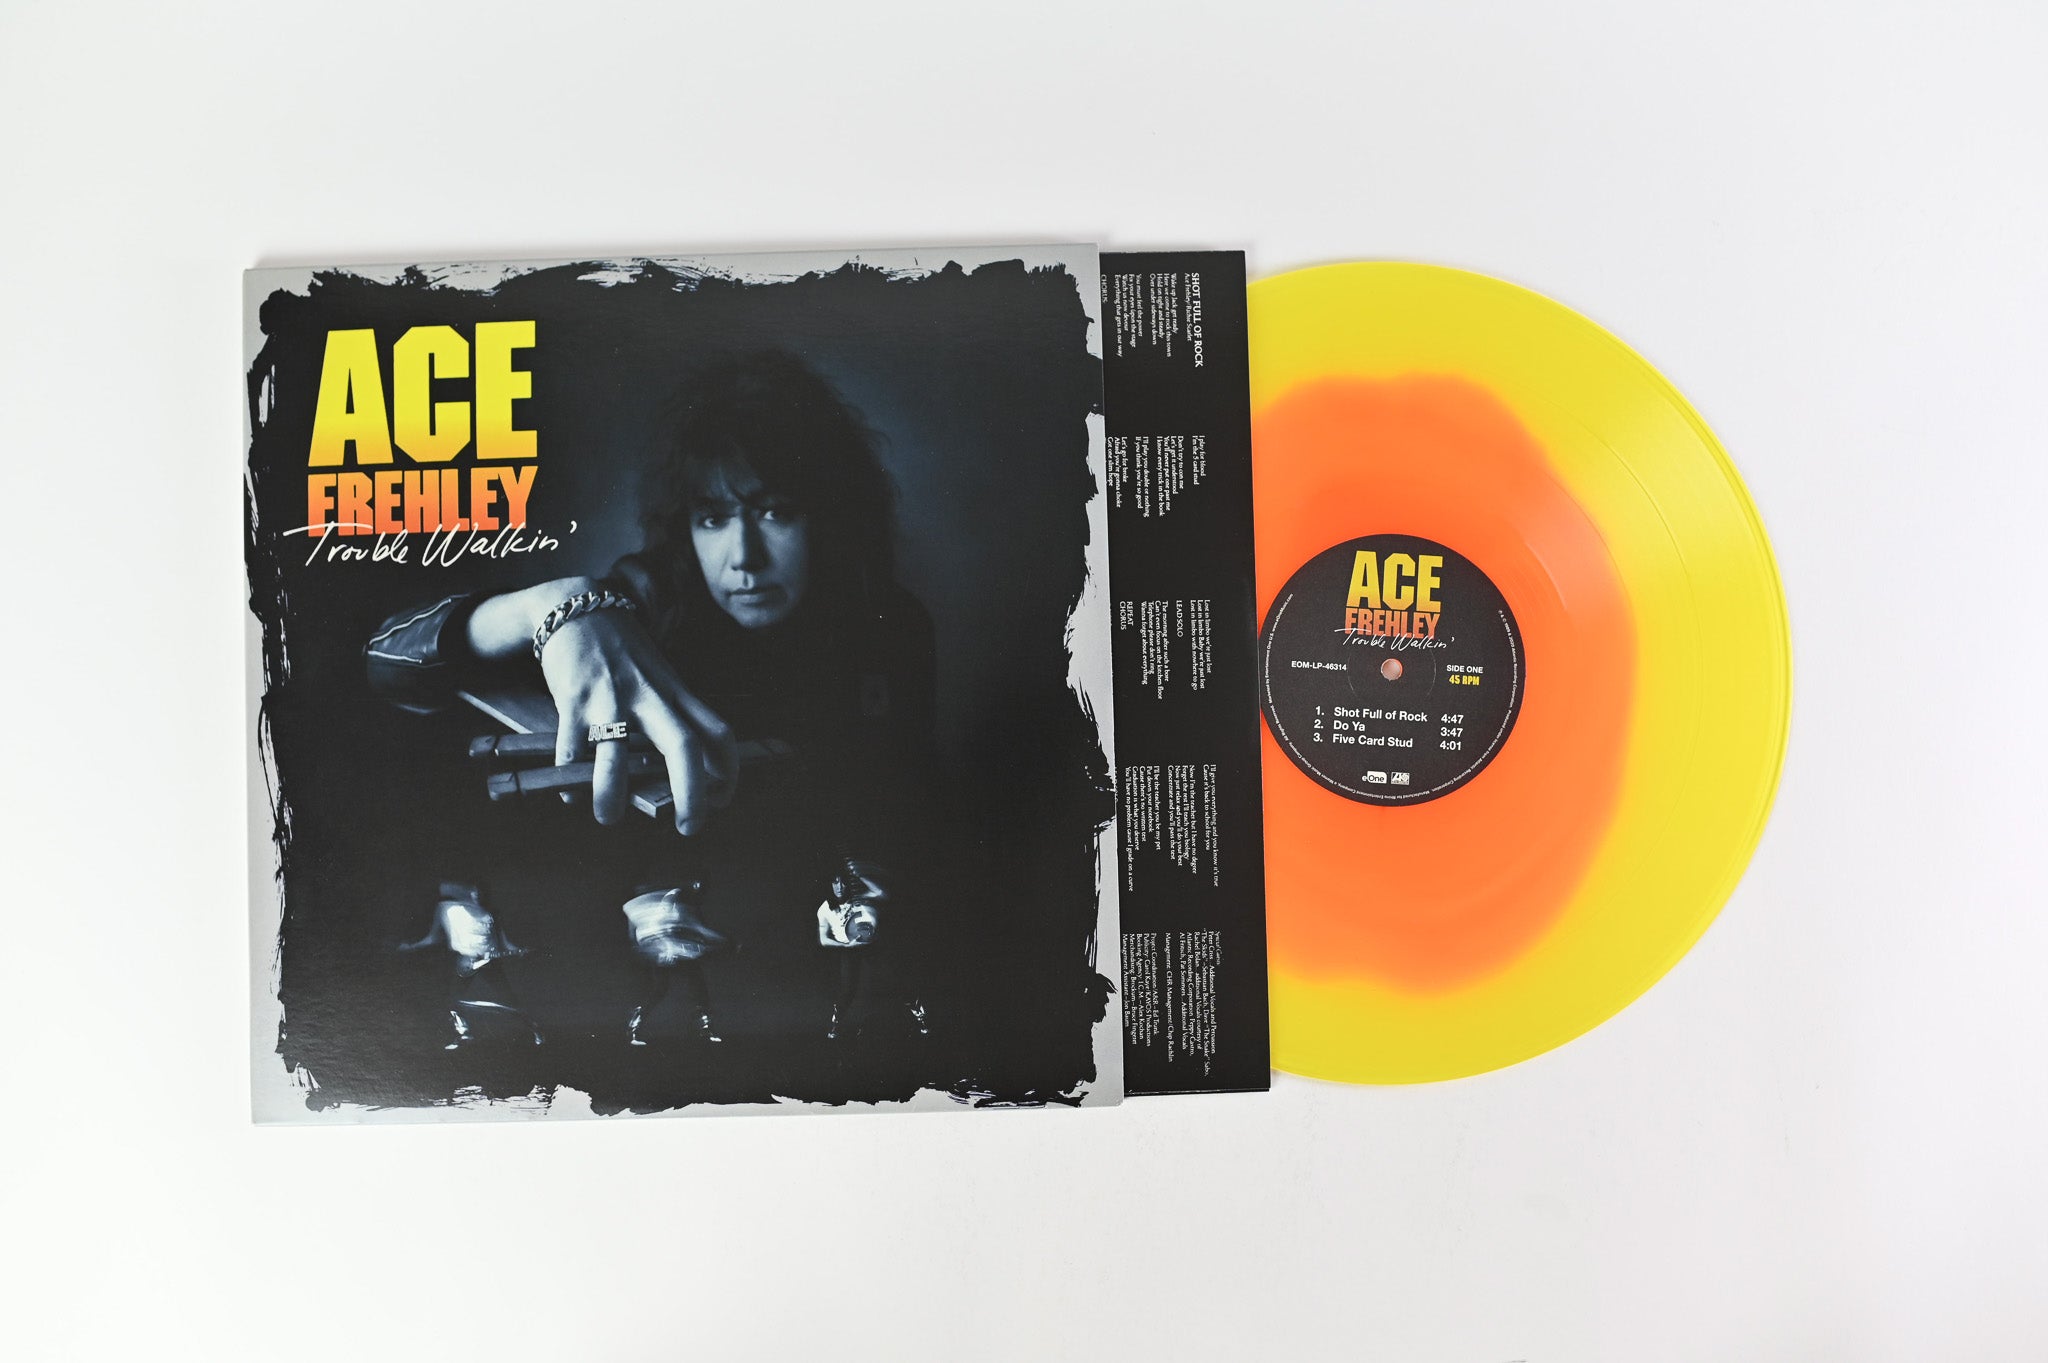 Ace Frehley - Trouble Walkin’ on eOne - RSD Yellow/Orange Vinyl